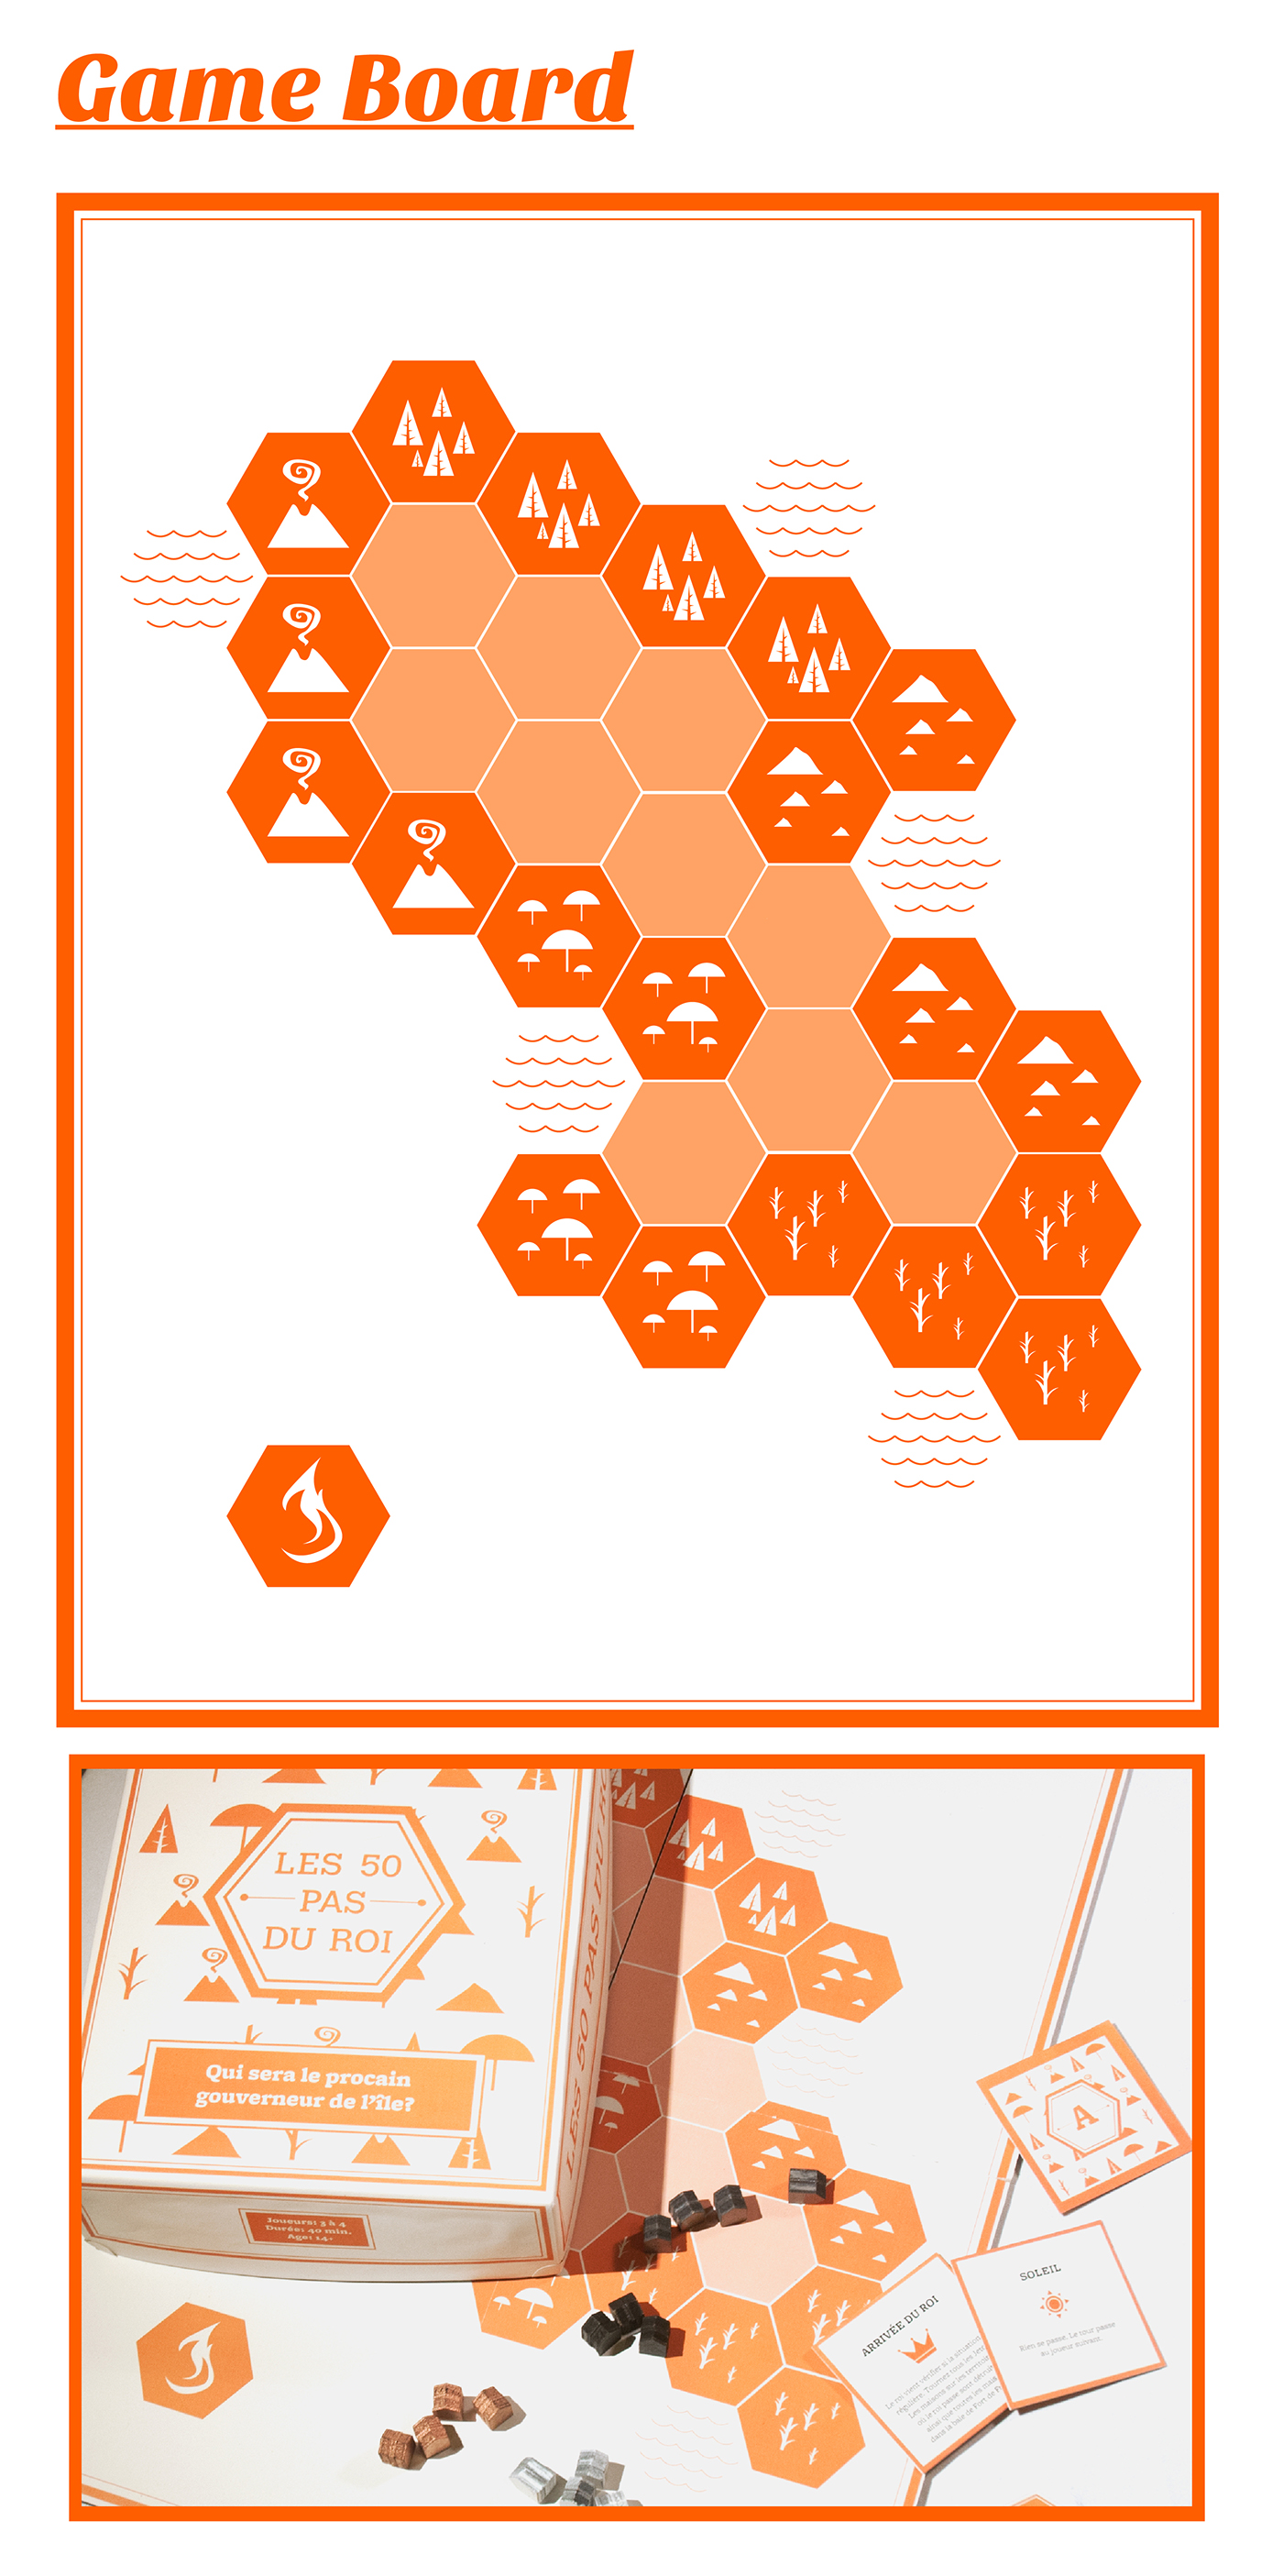 game board gioco da tavolo martinique island ebabx polimi orange Plau game Board Project graphic design